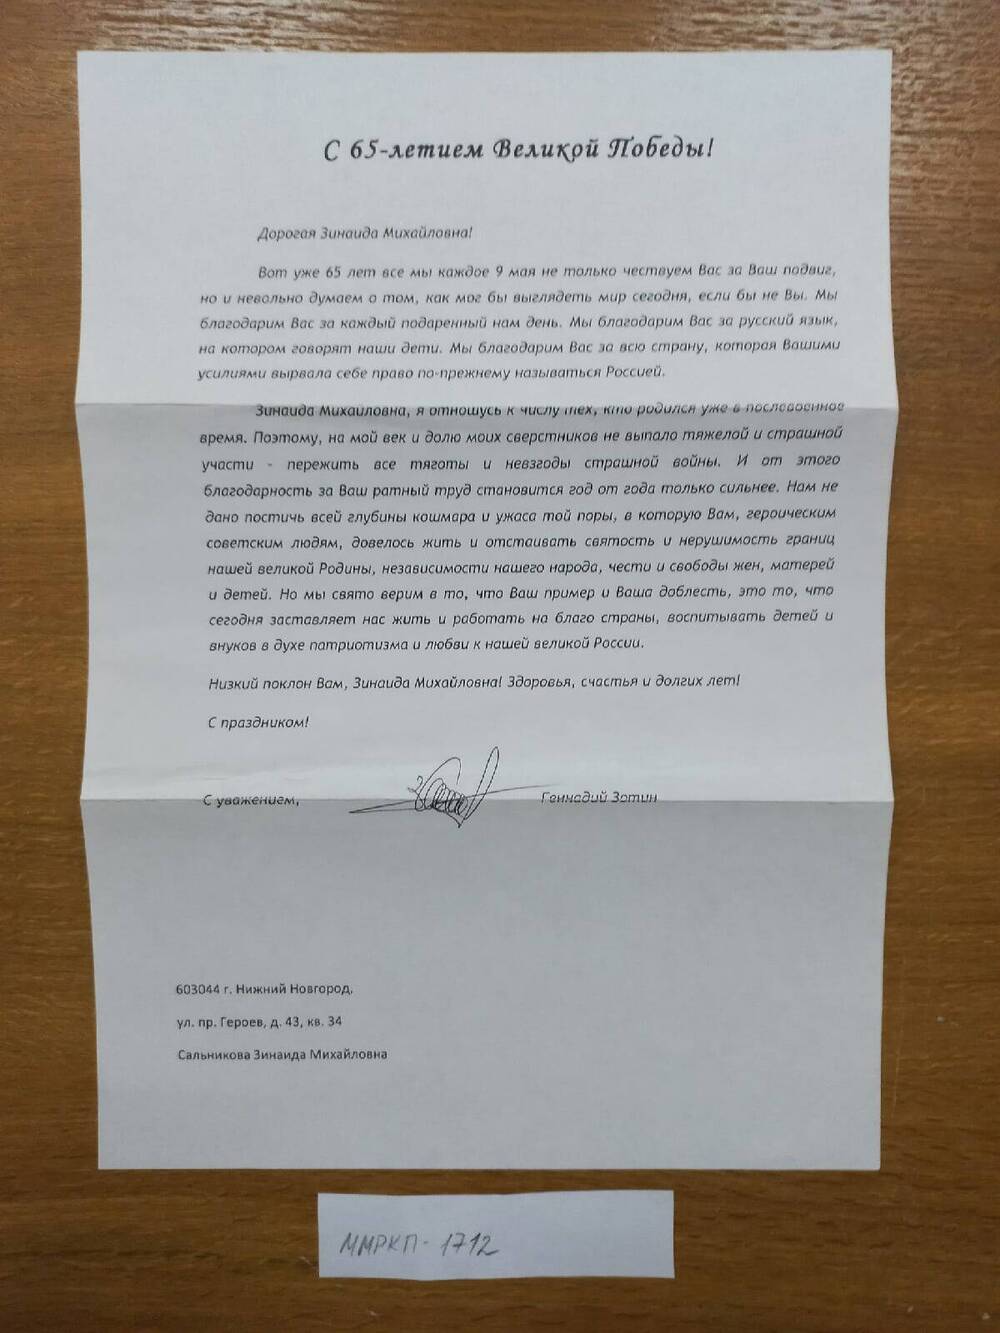 Письмо поздравительное в связи 65-летием Великой Победы Сальниковой З.М. 2010 г. г. Н. Новгород.